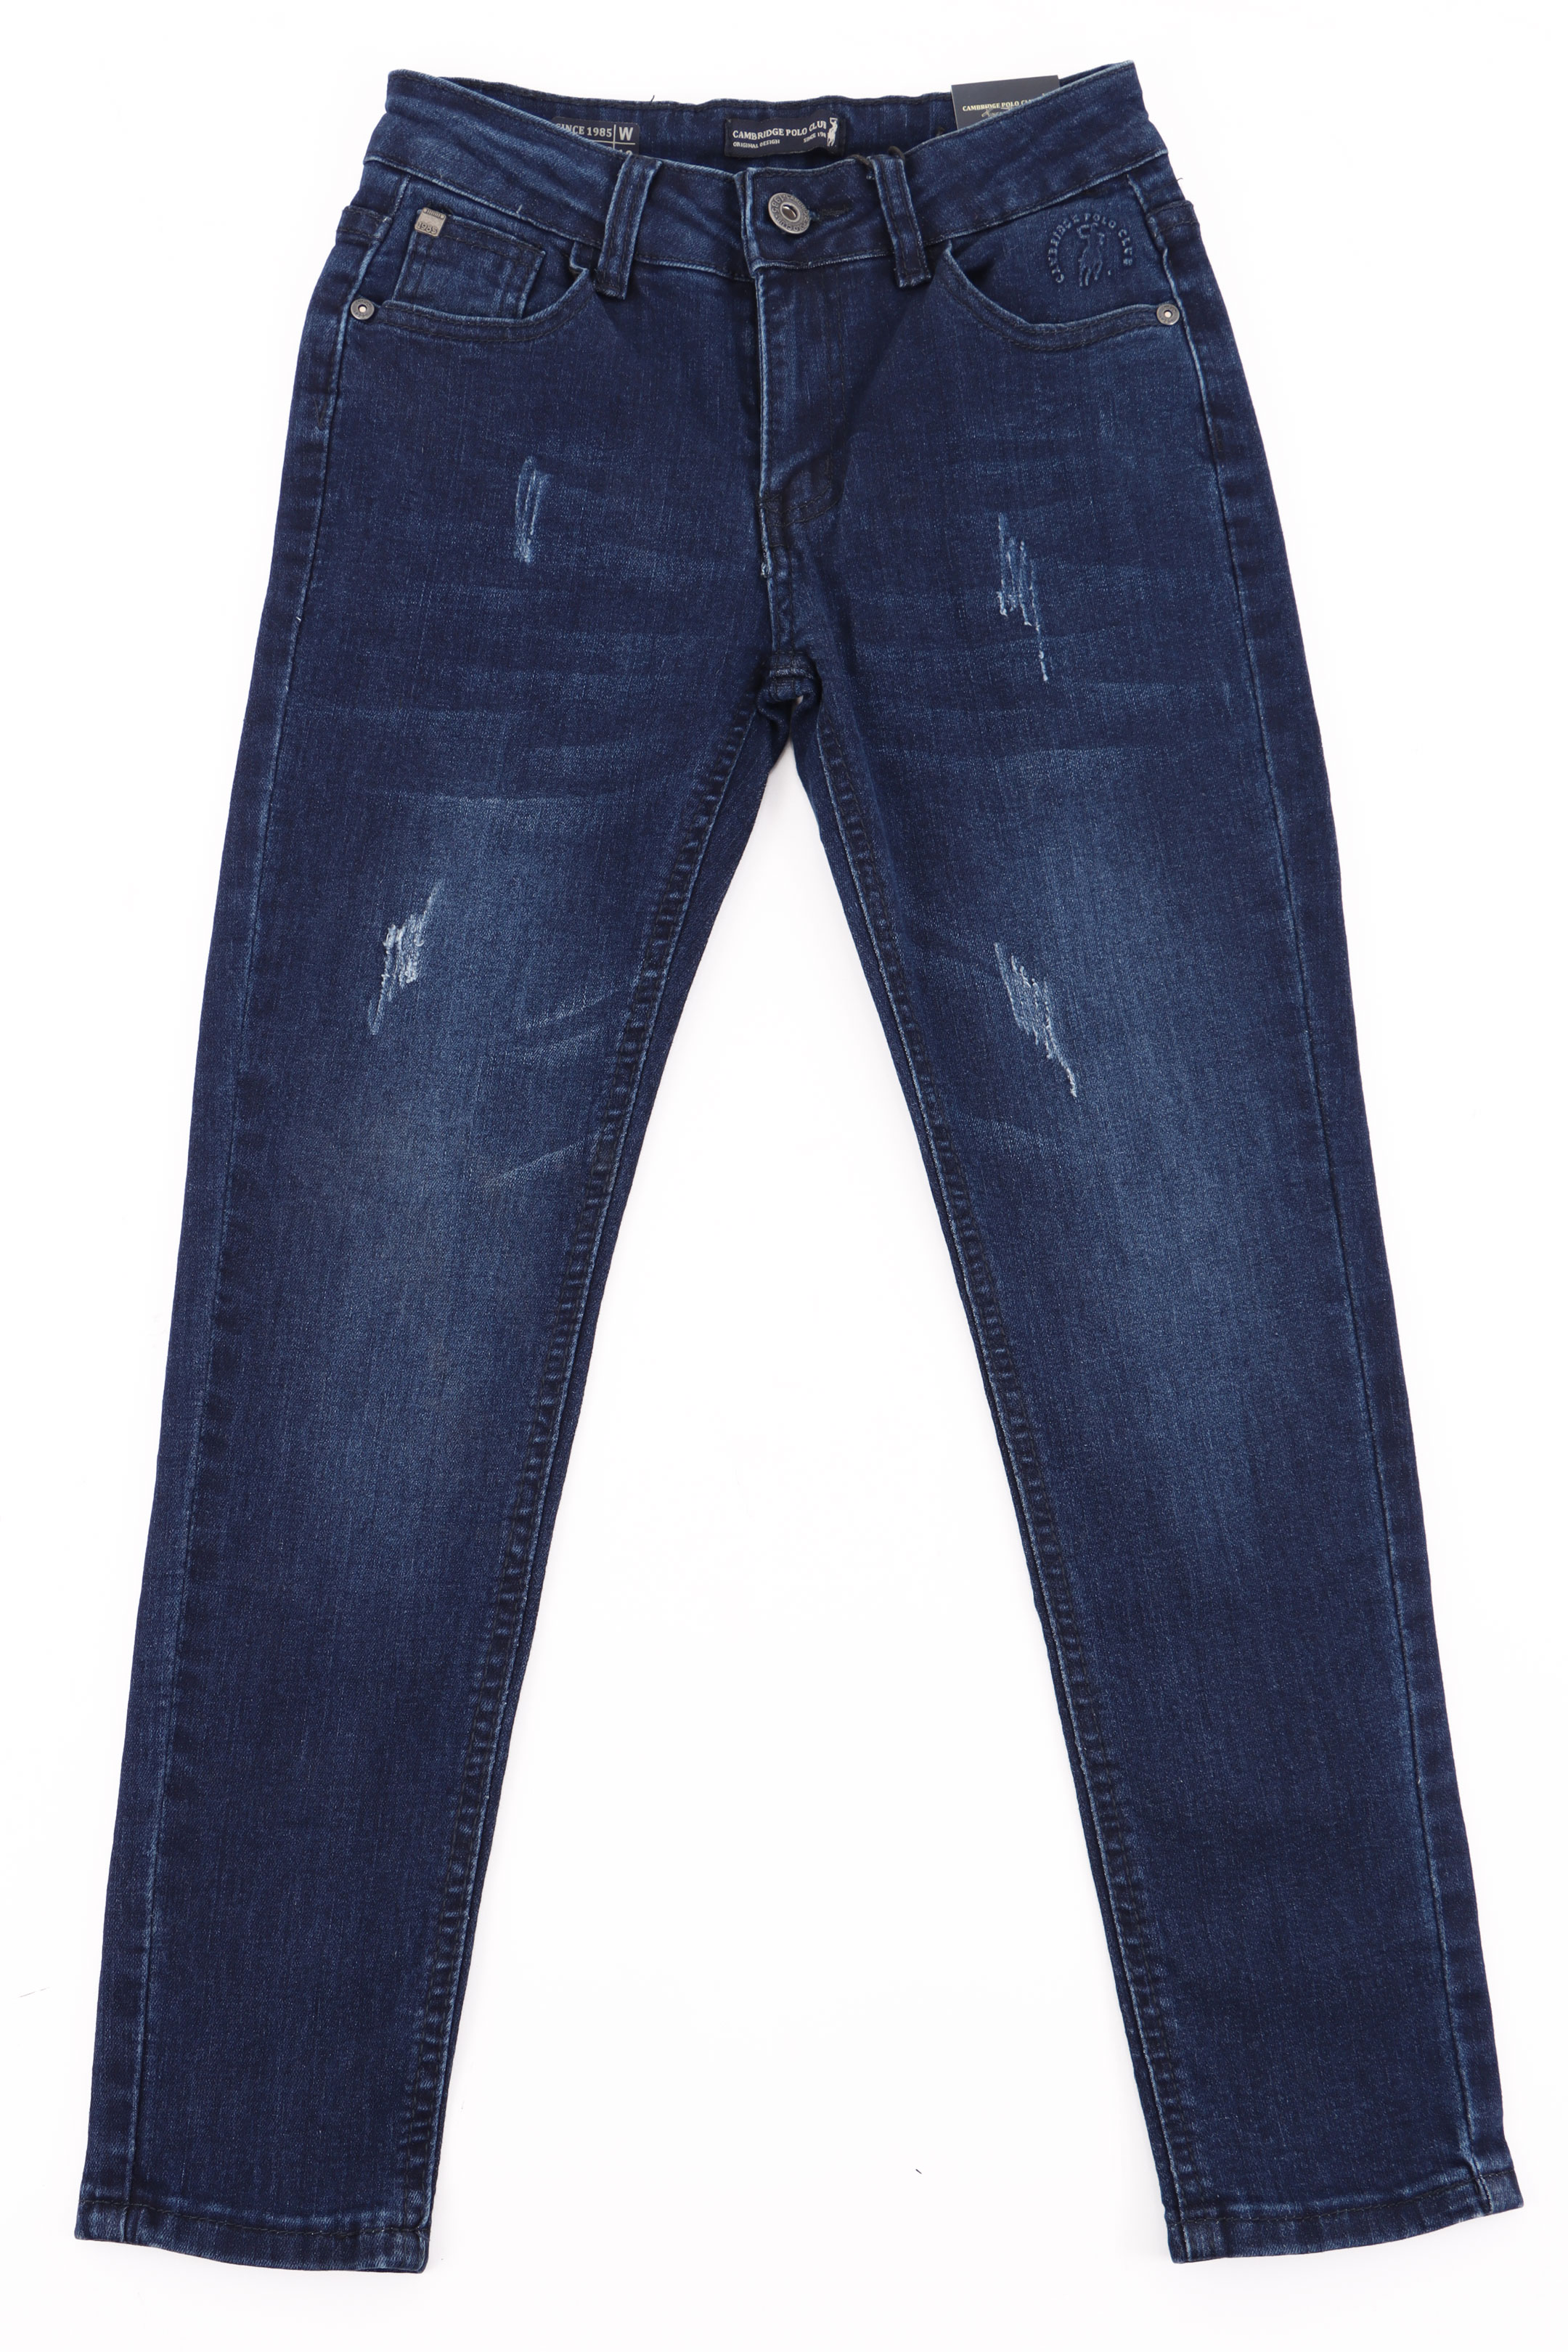 Jeans Polo cambridge